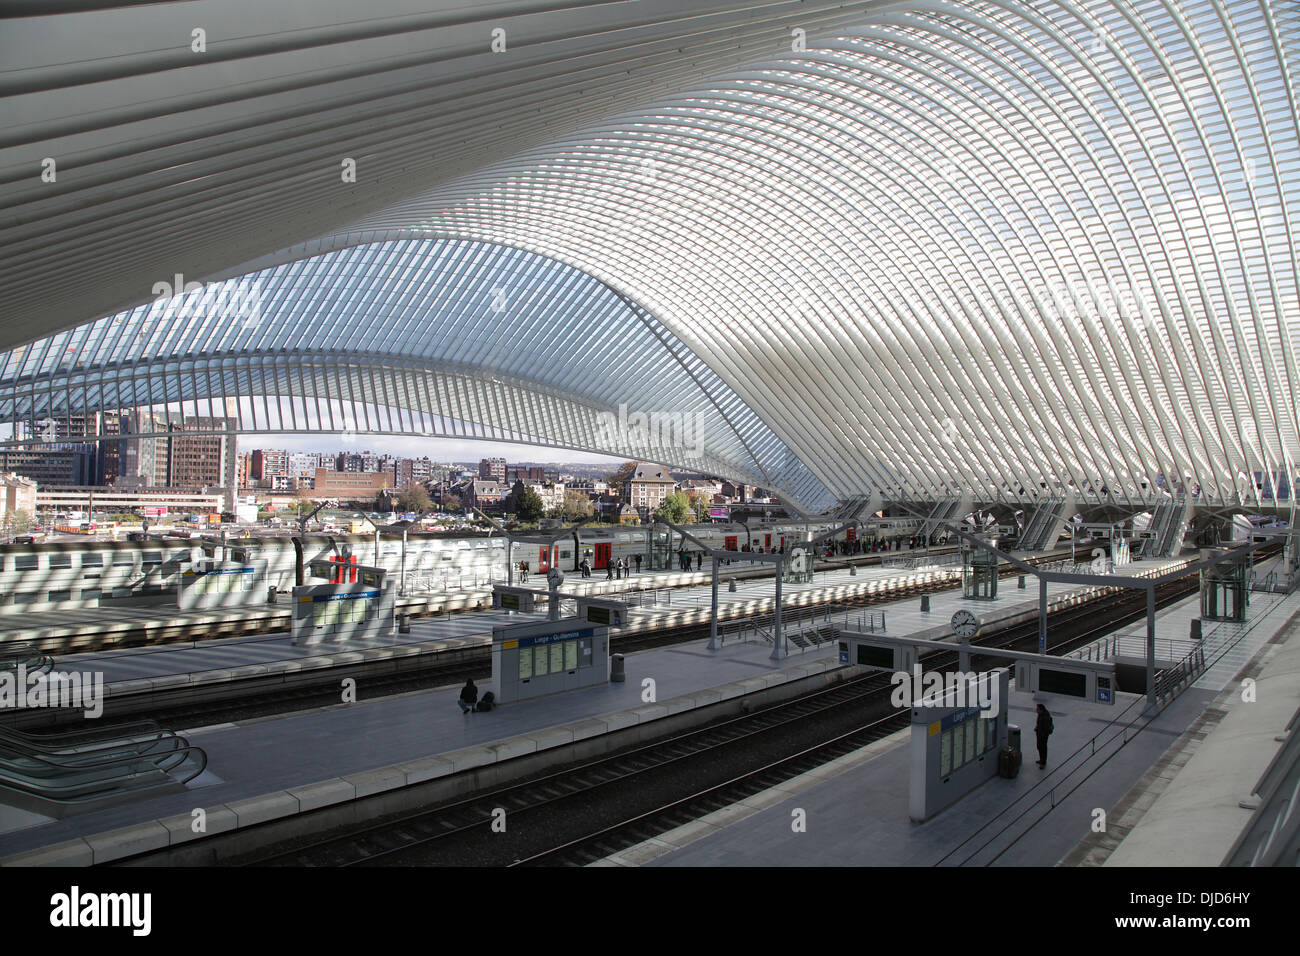 Der Bahnhof von Lüttich, Gare de Liège-Guillemins, entworfen vom spanischen Architekten Santiago Calatrava. Lüttich, Wallonien, Belgien Stockfoto